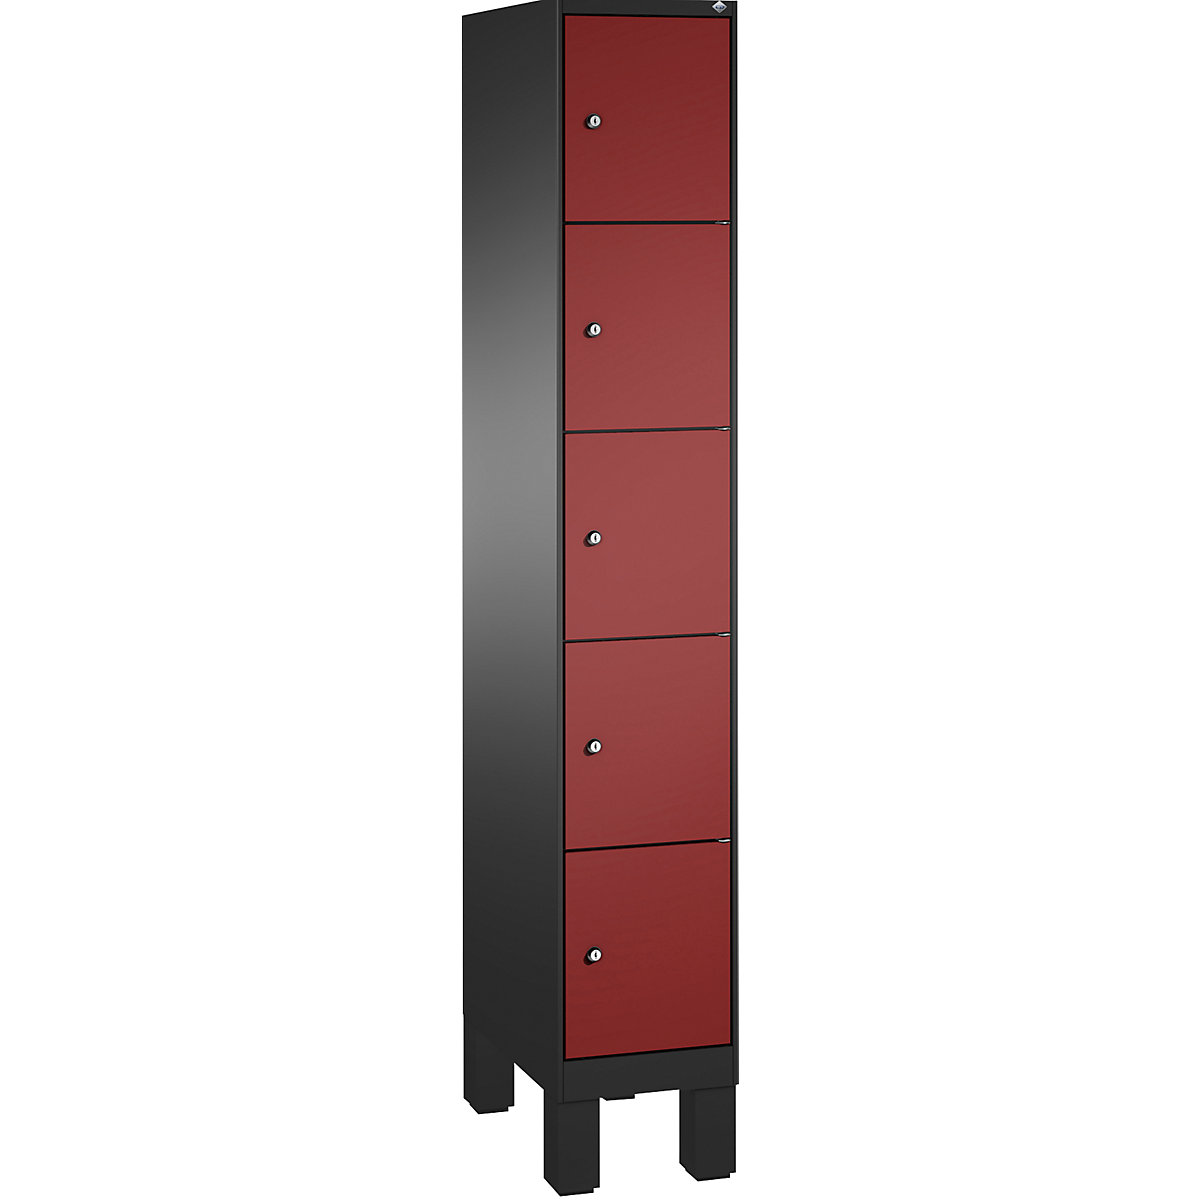 Armoire à casiers sur pieds EVOLO – C+P, 1 compartiment, 5 casiers, largeur compartiment 300 mm, gris noir / rouge rubis-15